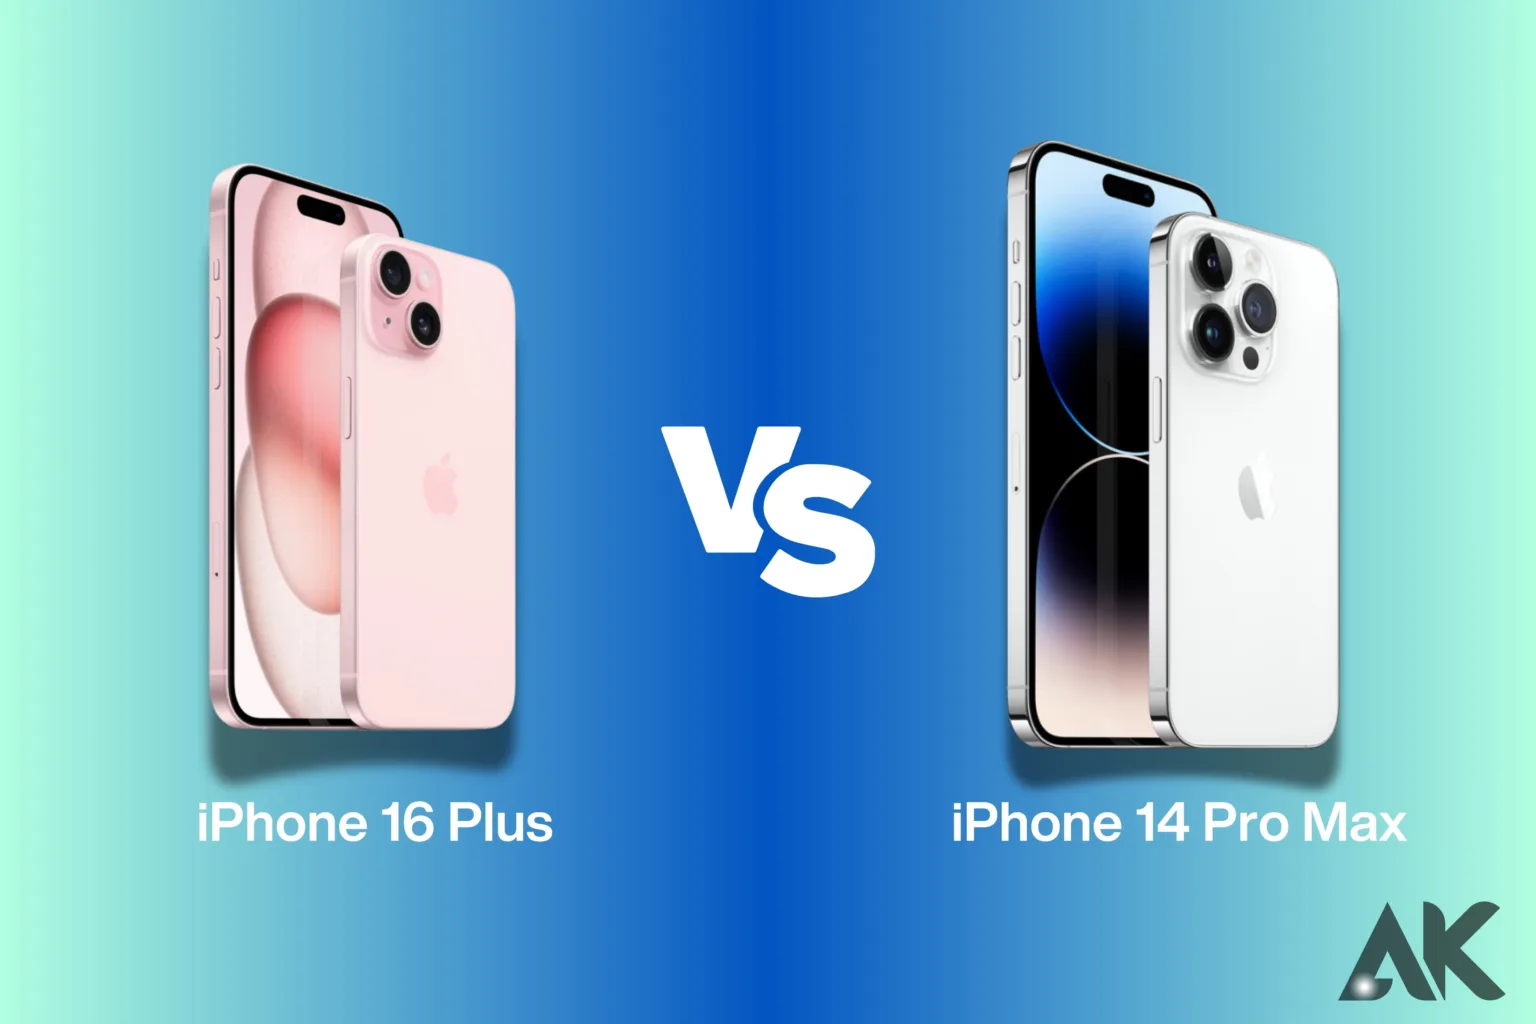 iPhone 16 Plus vs iPhone 14 Pro Max